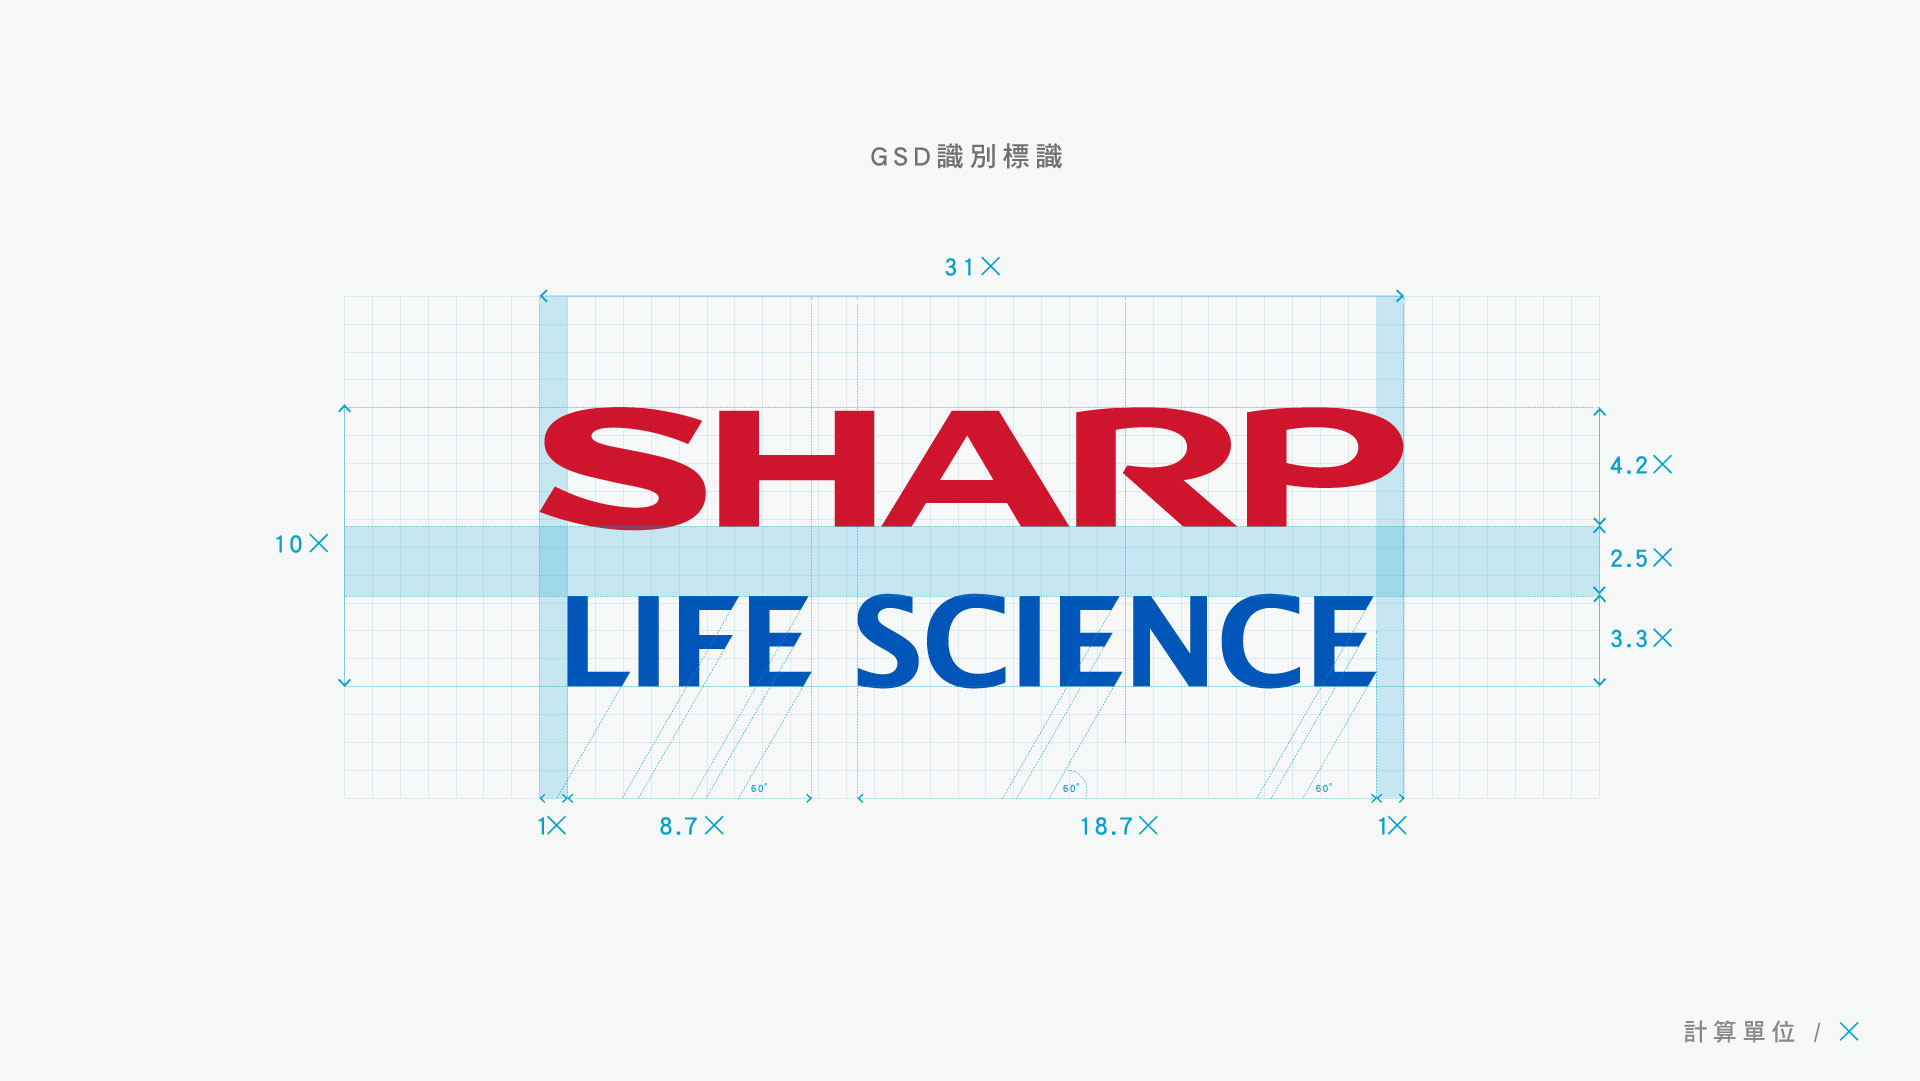 同心圓製作SHARP夏普健康科學